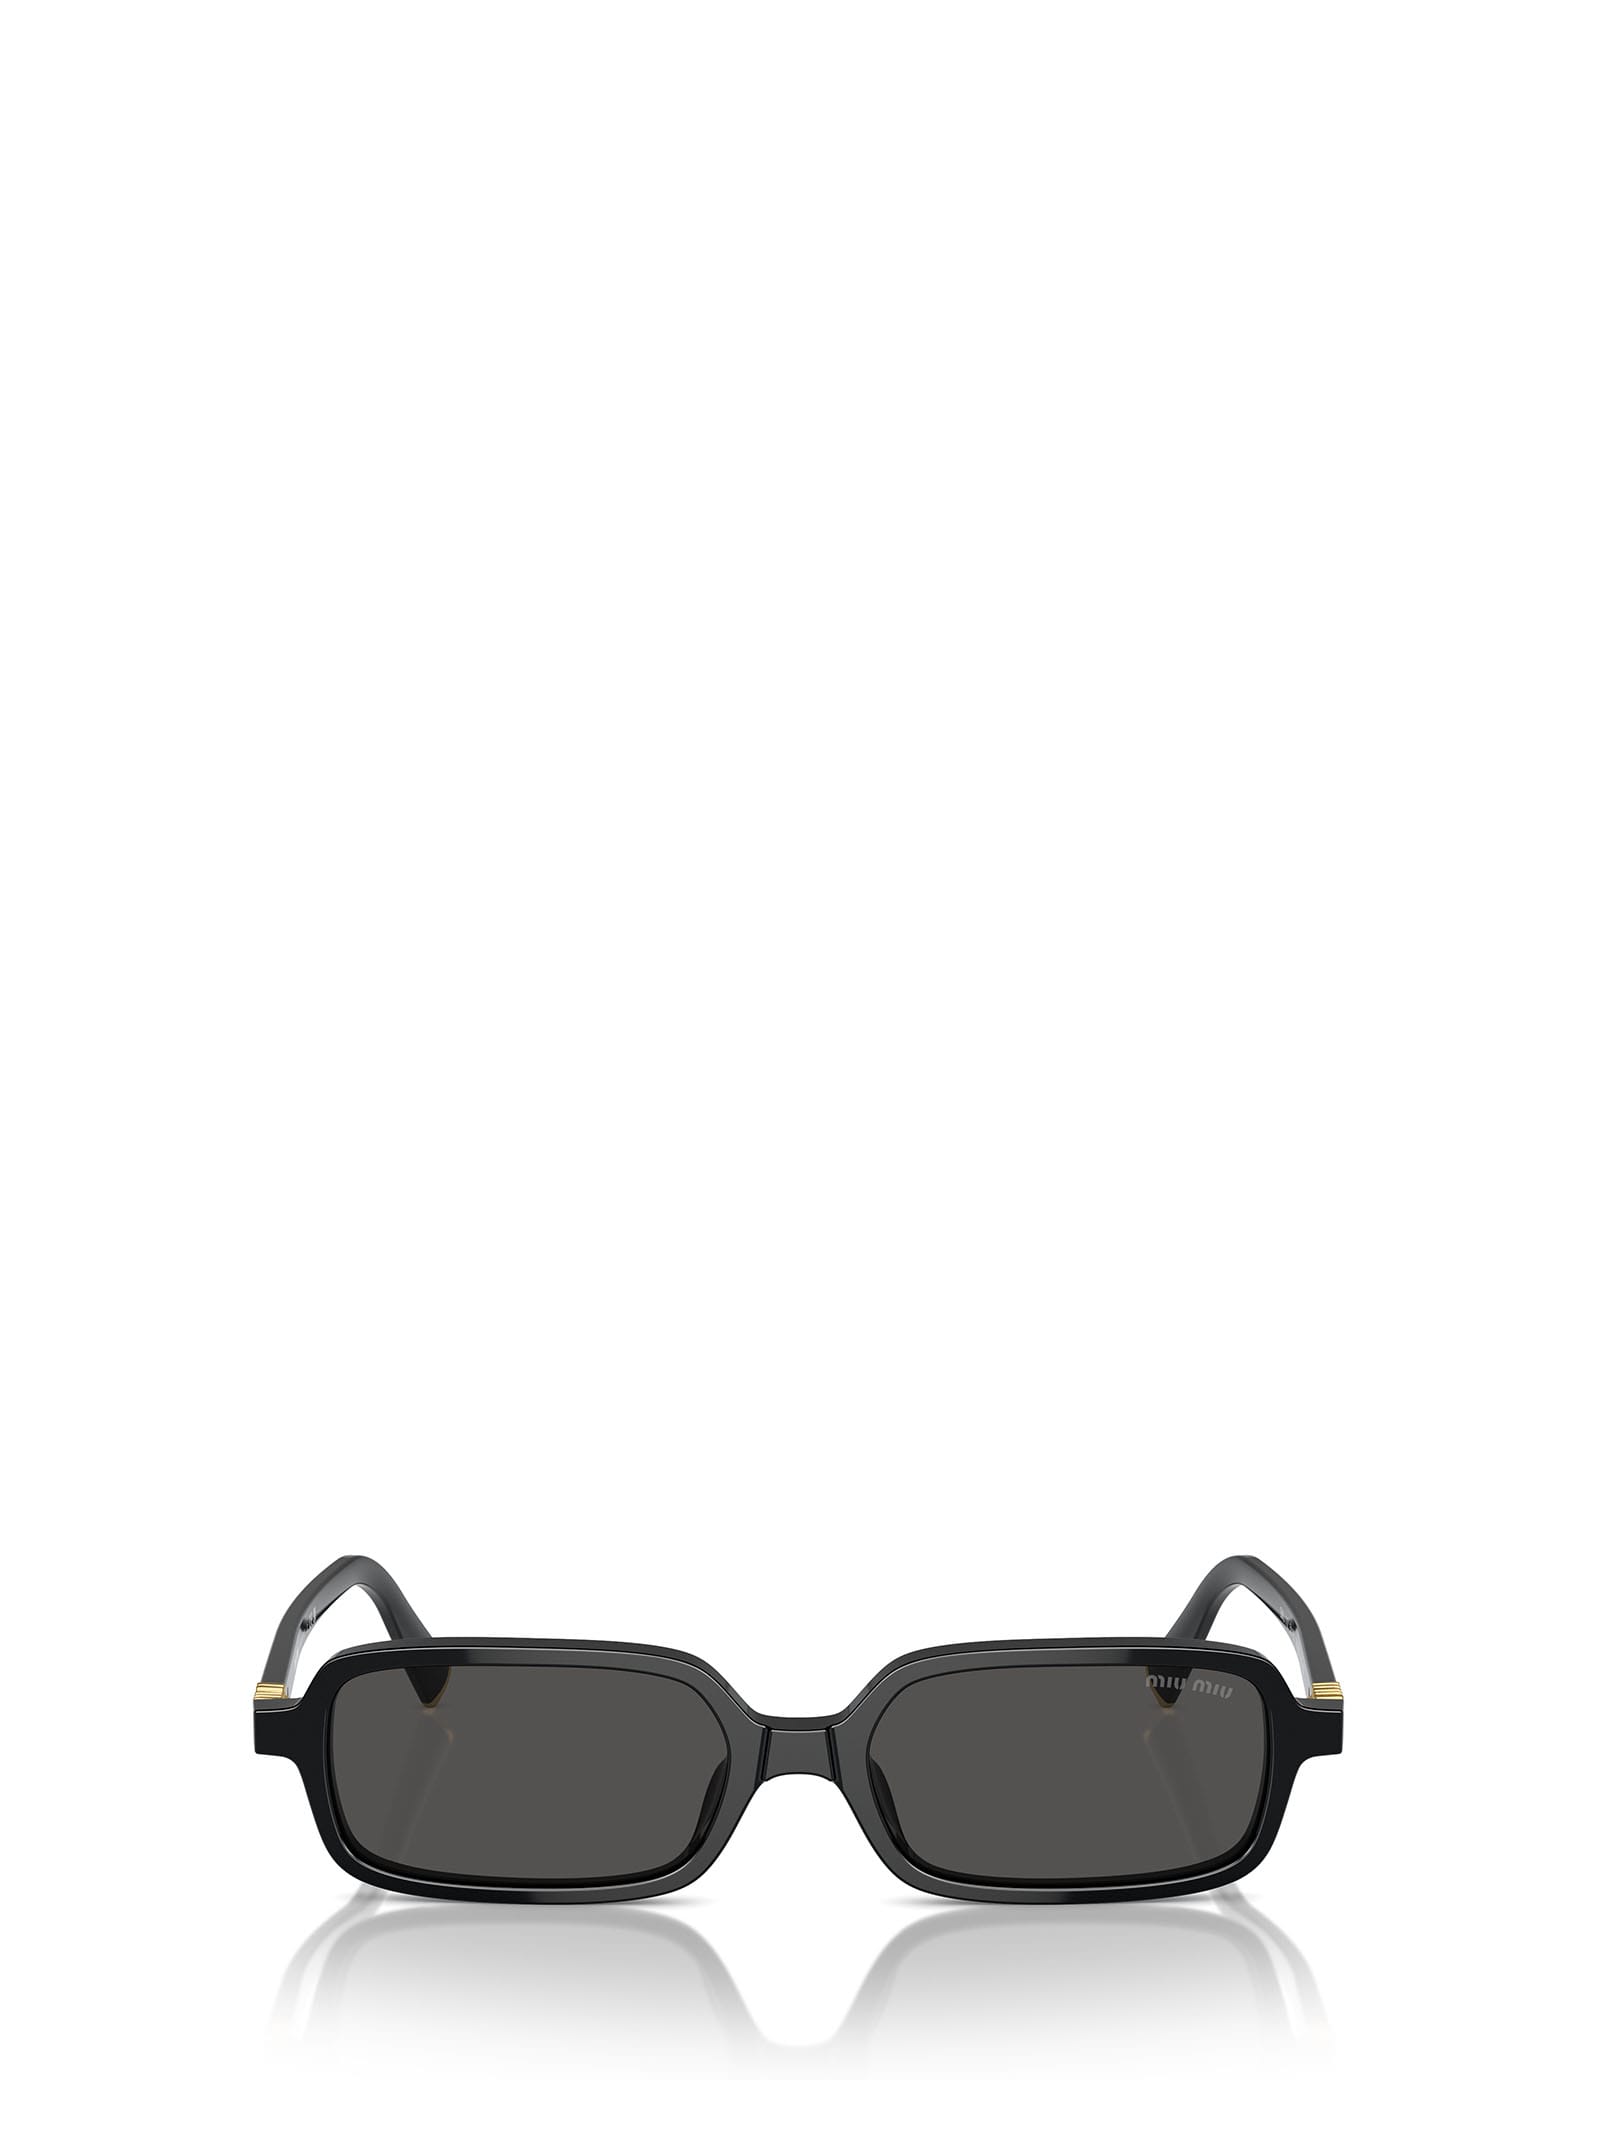 Mu 11zs Black Sunglasses